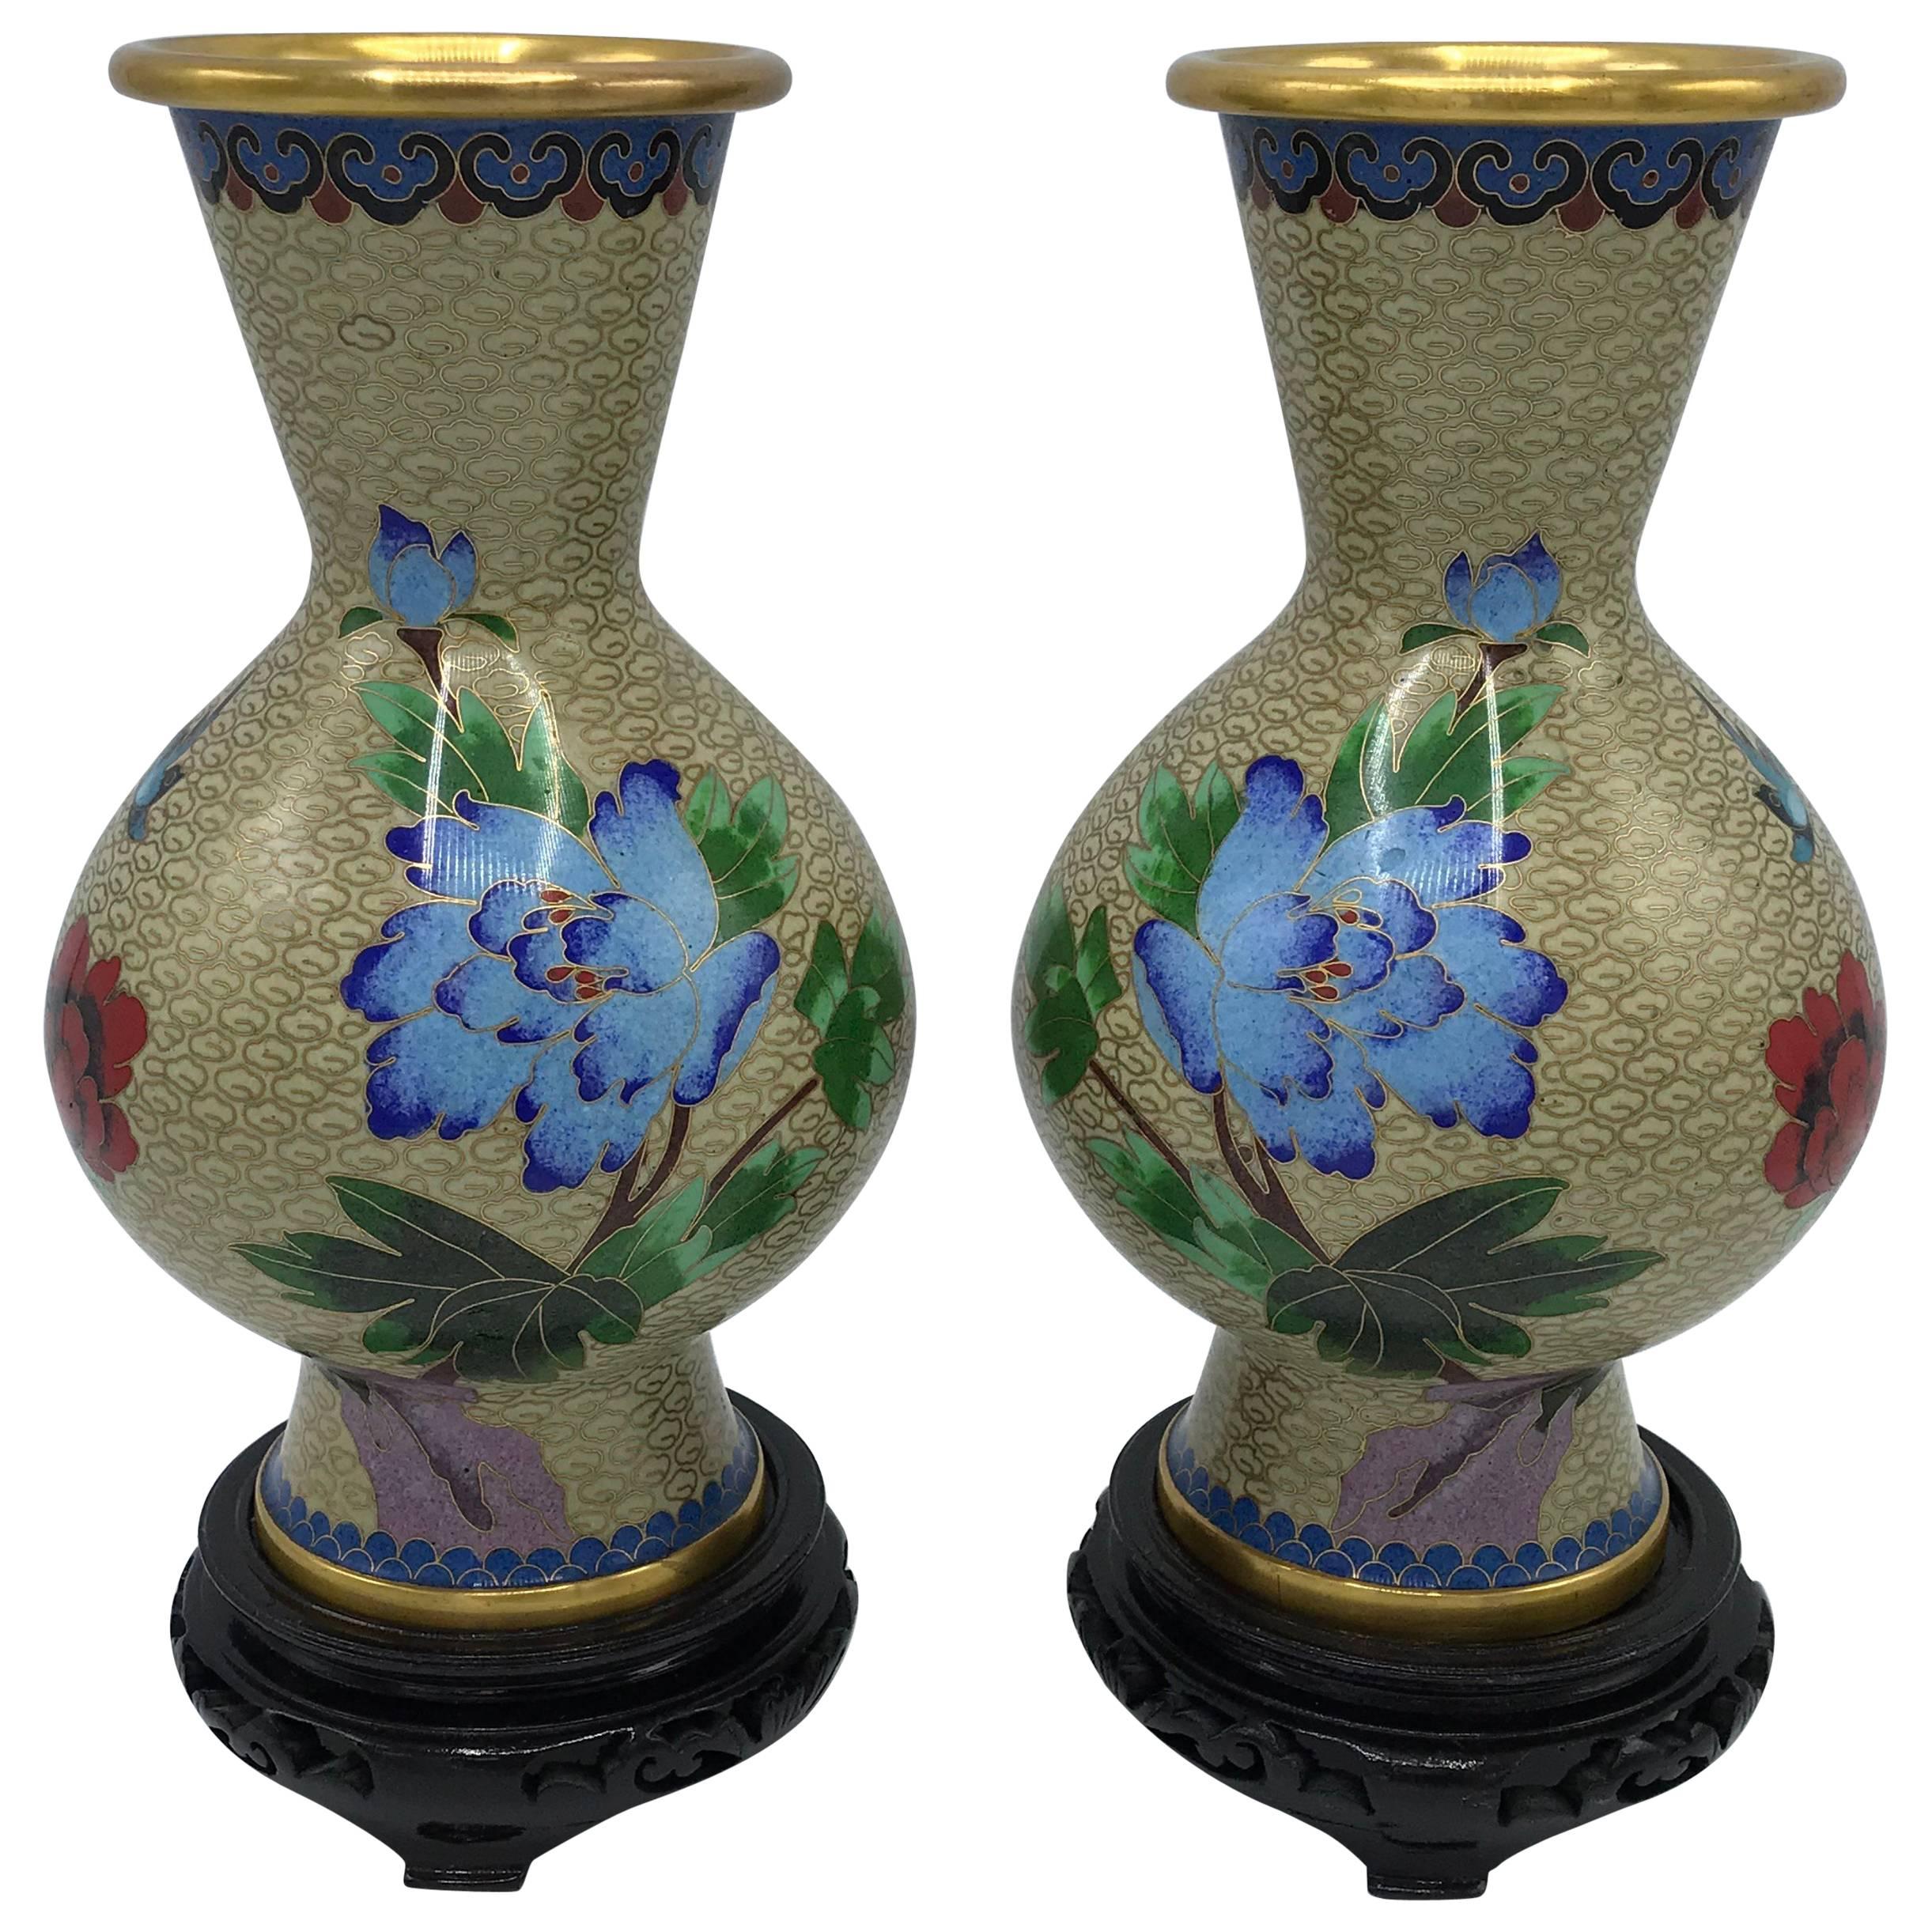 1960s Cloisonné Polychrome Floral Motif Vase on Stand, Pair For Sale